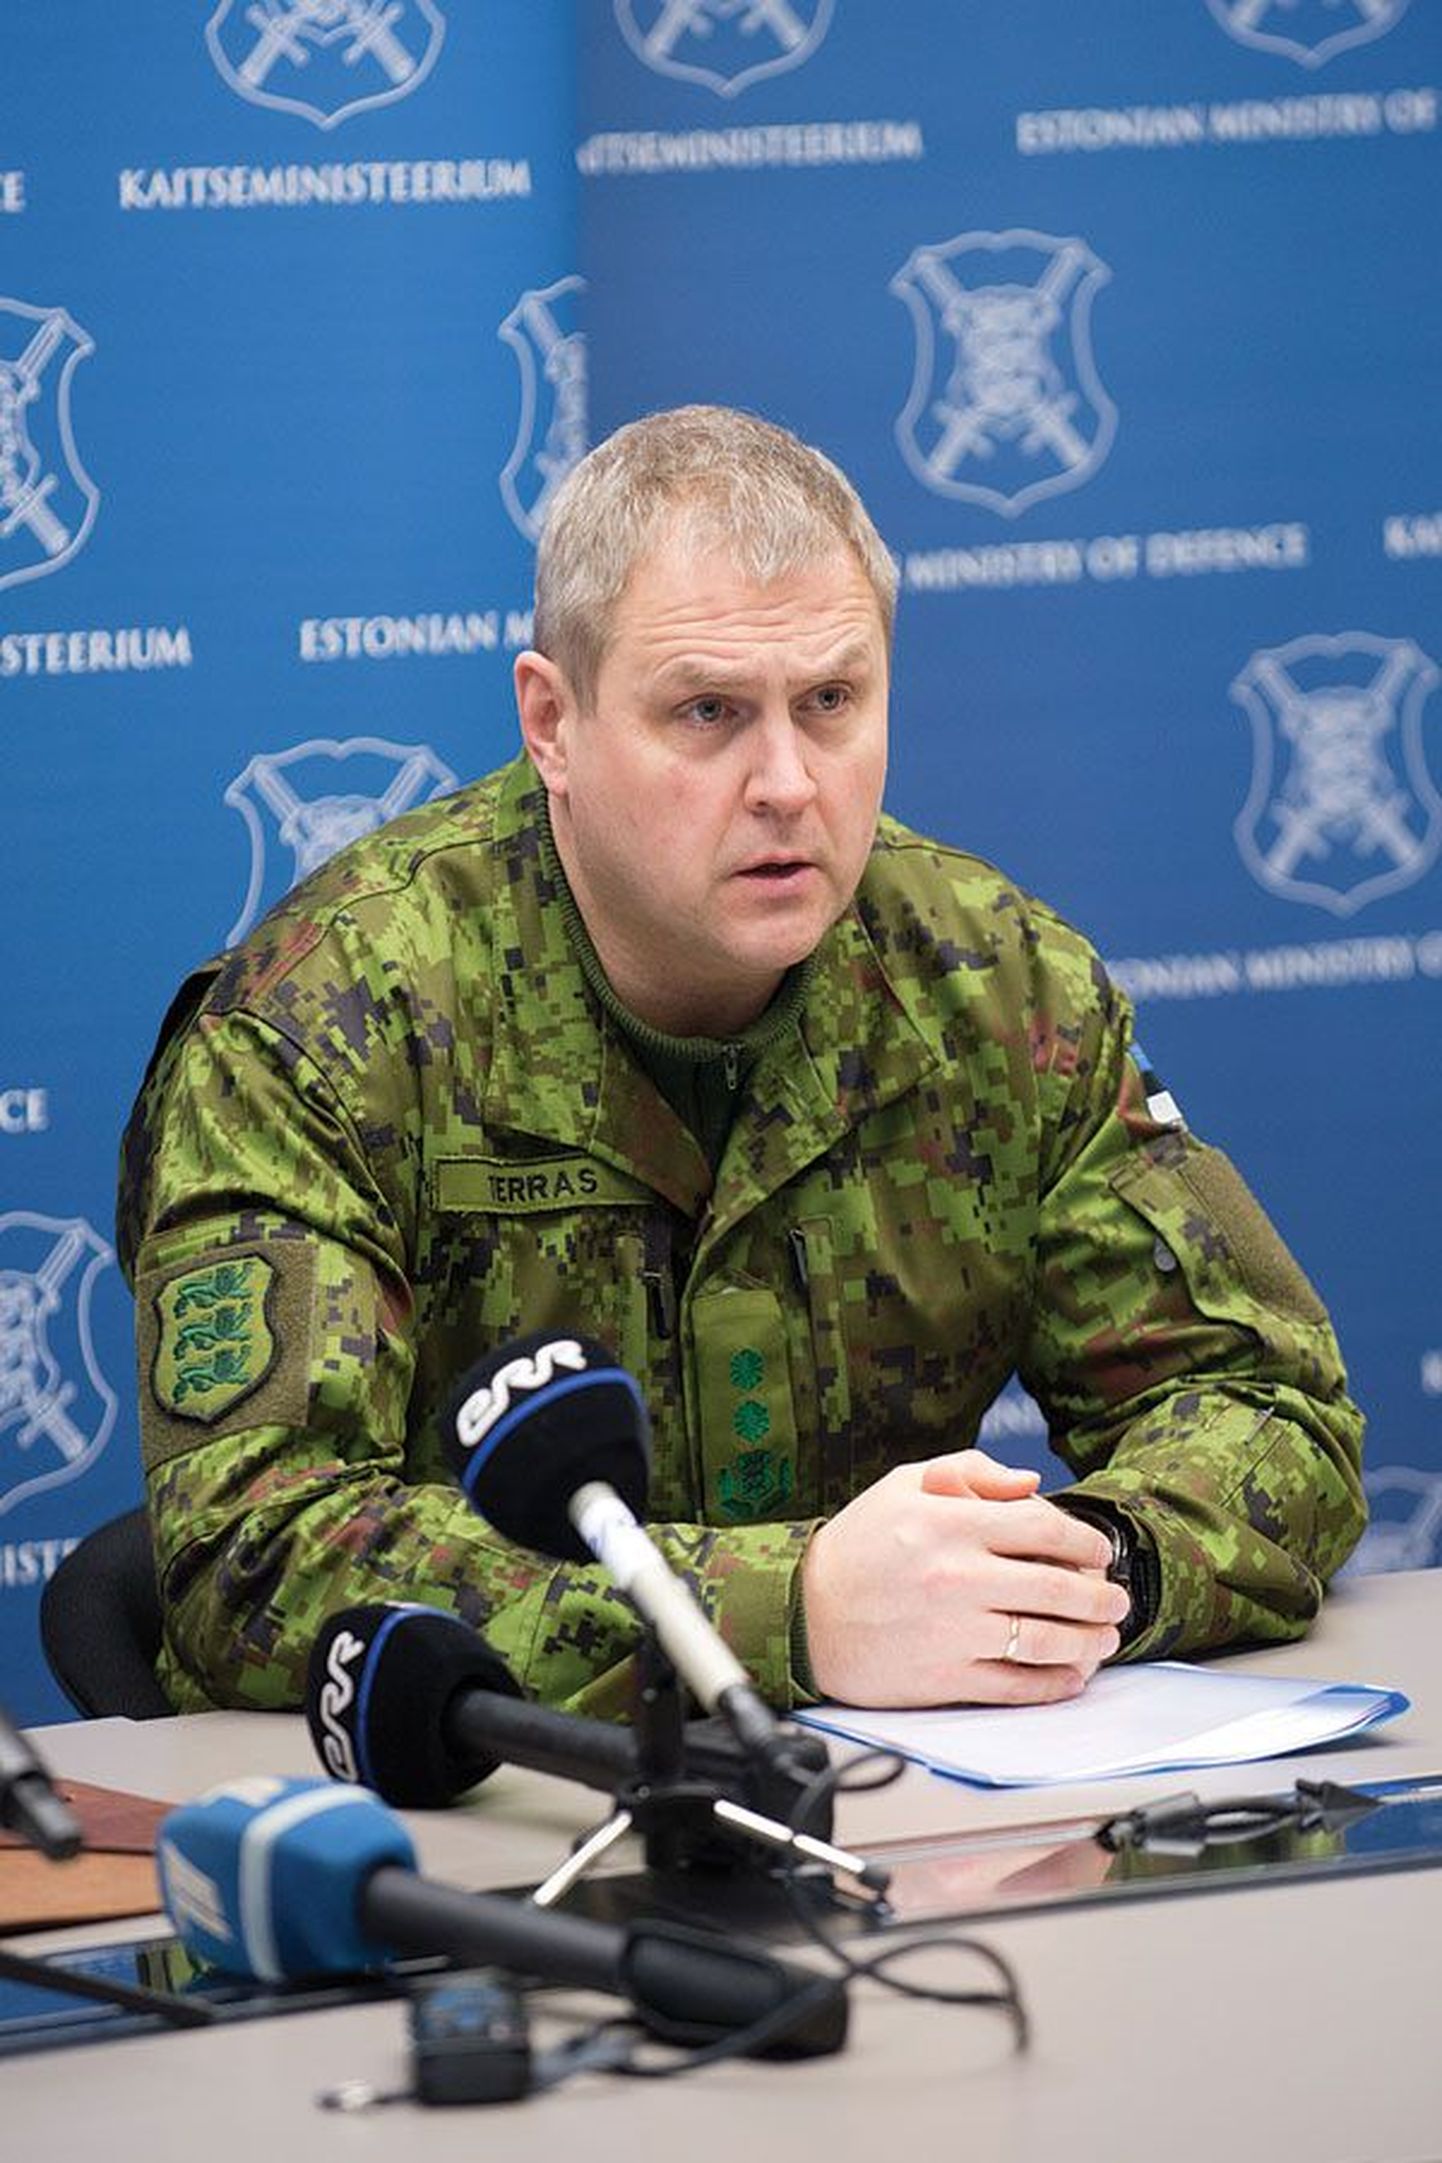 Командующий Силами обороны Эстонии Рихо Террас.